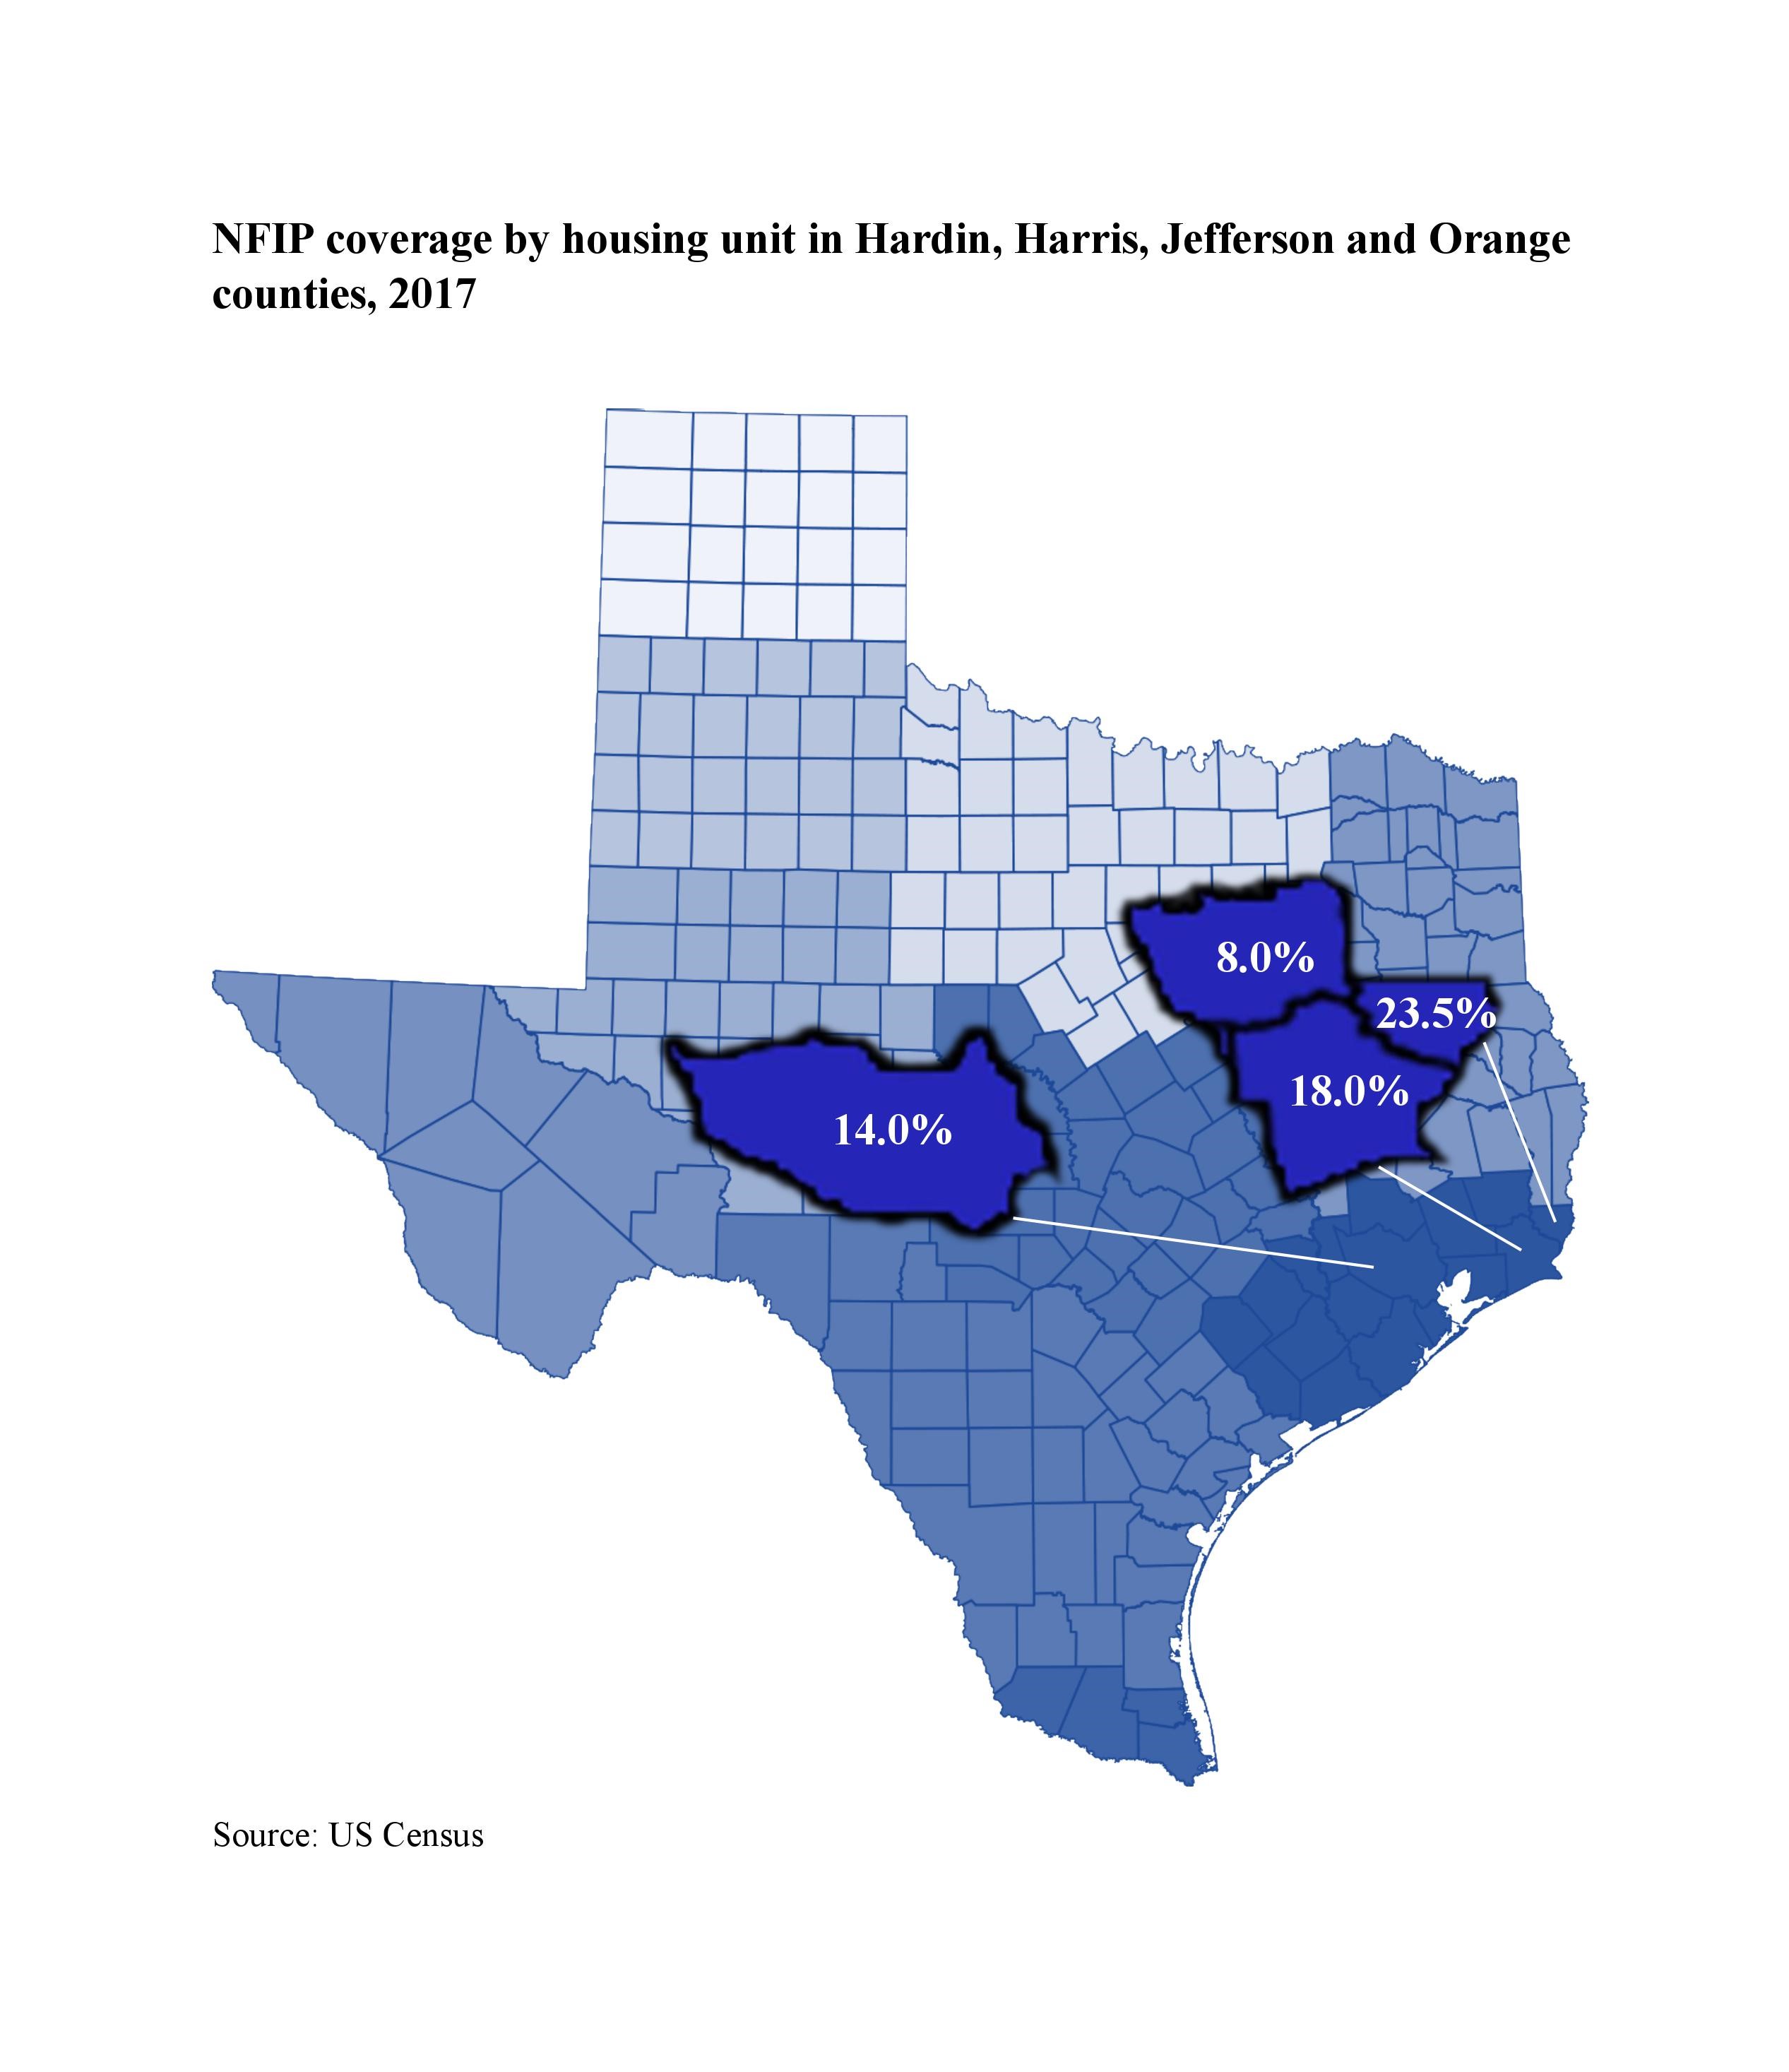 NFIP coverage in Hardin - 8.0% Harris - 14.0% Jefferson - 18.0% Orange - 23.5%